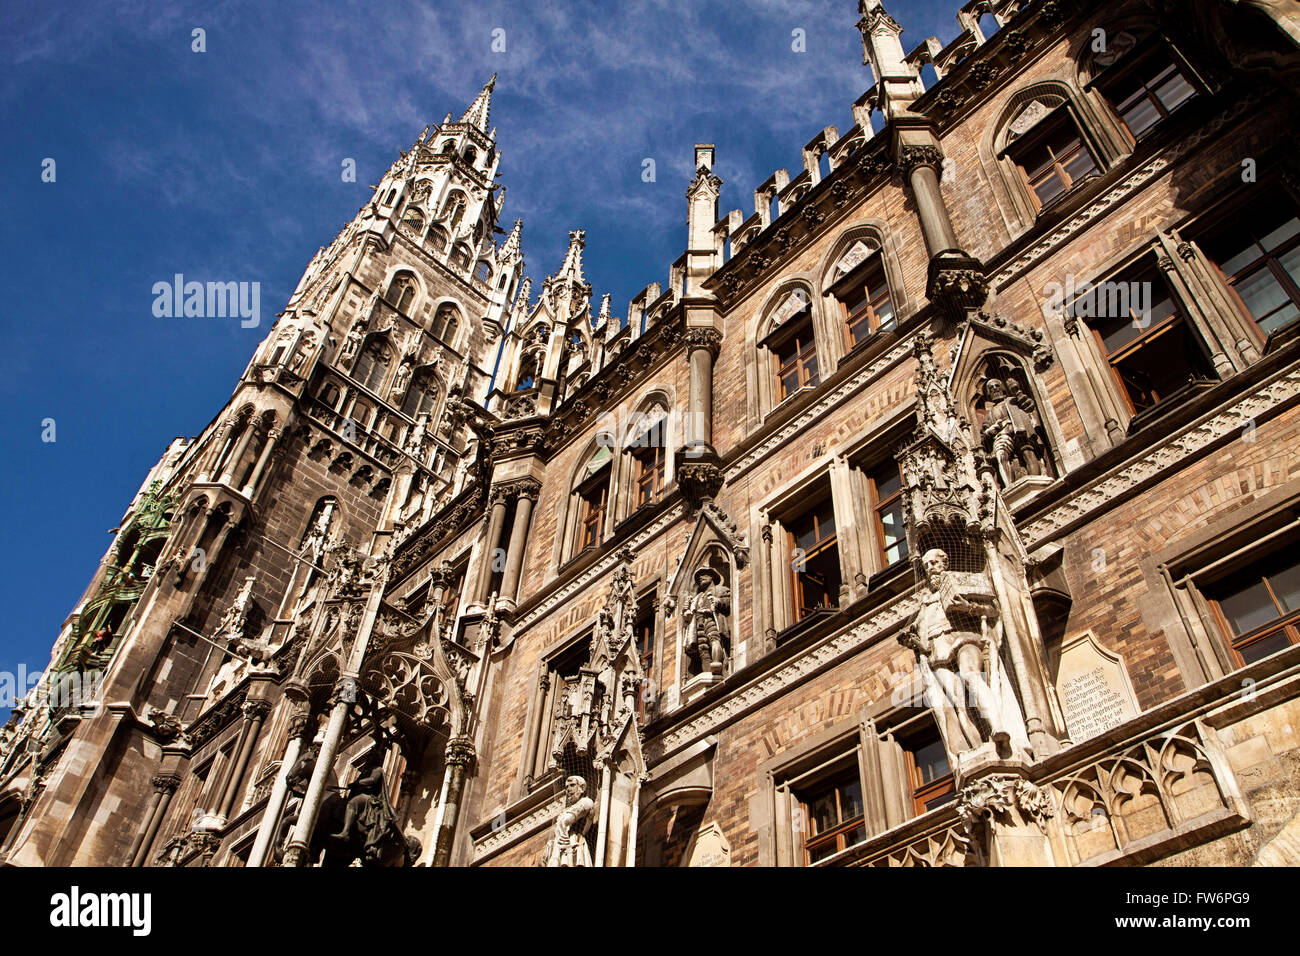 München-Detail von der schönen Architektur im gotischen Stil der City Hall (Rathaus) mit dem Uhrturm Stockfoto